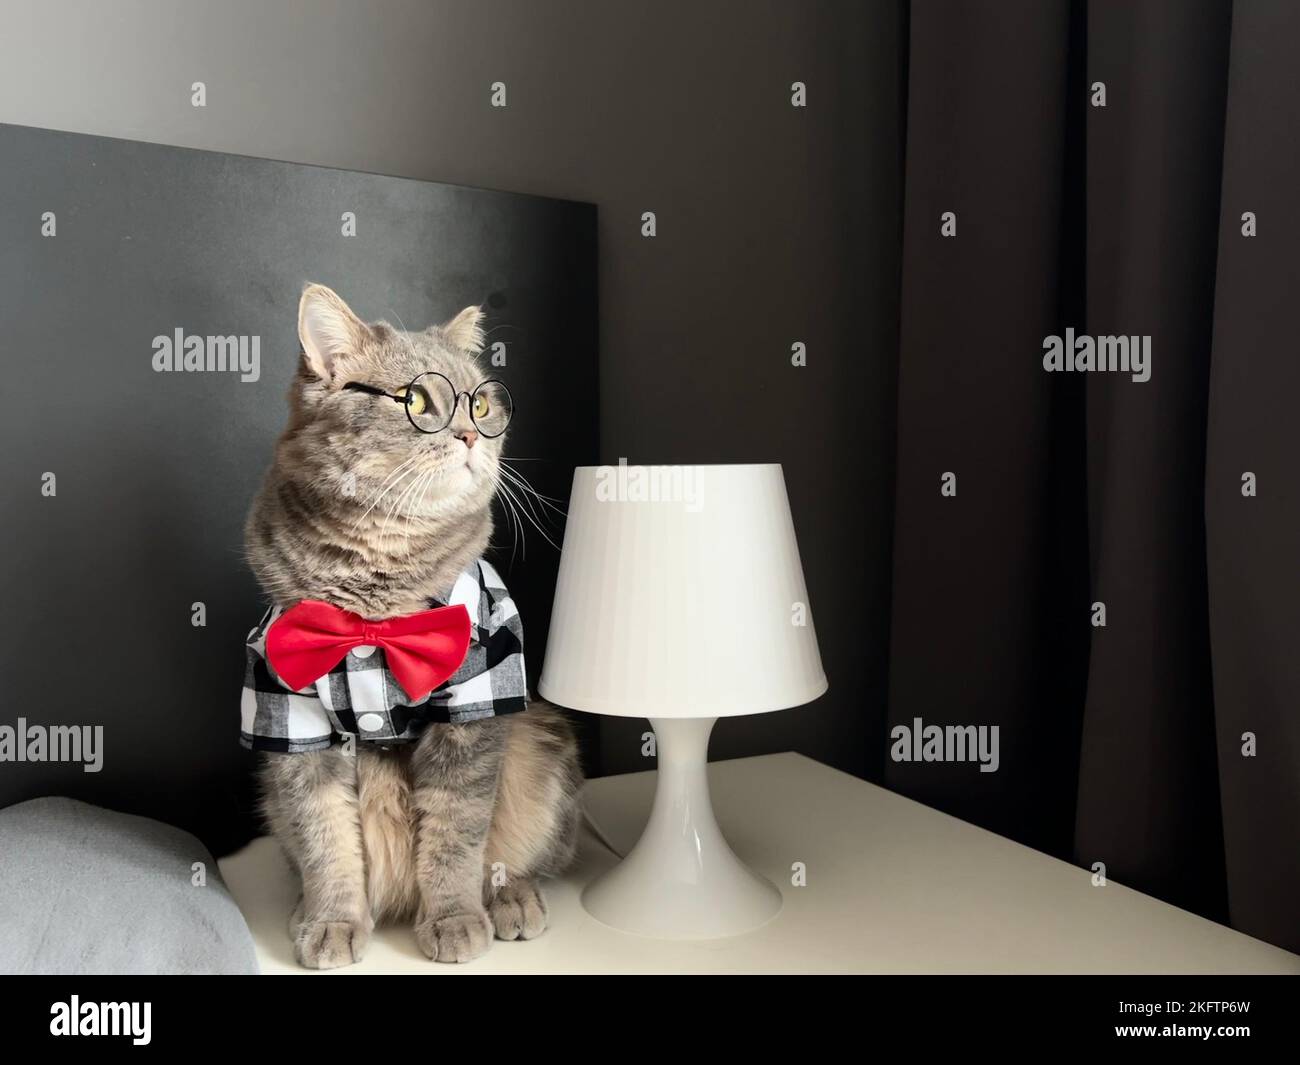 Eine schottische geradohrige graue Katze mit Brille, einem schwarz-weißen Hemd und einer roten Krawatte sieht aus wie ein Boss. Haustiere in einem gemütlichen, modernen Apartment Stockfoto